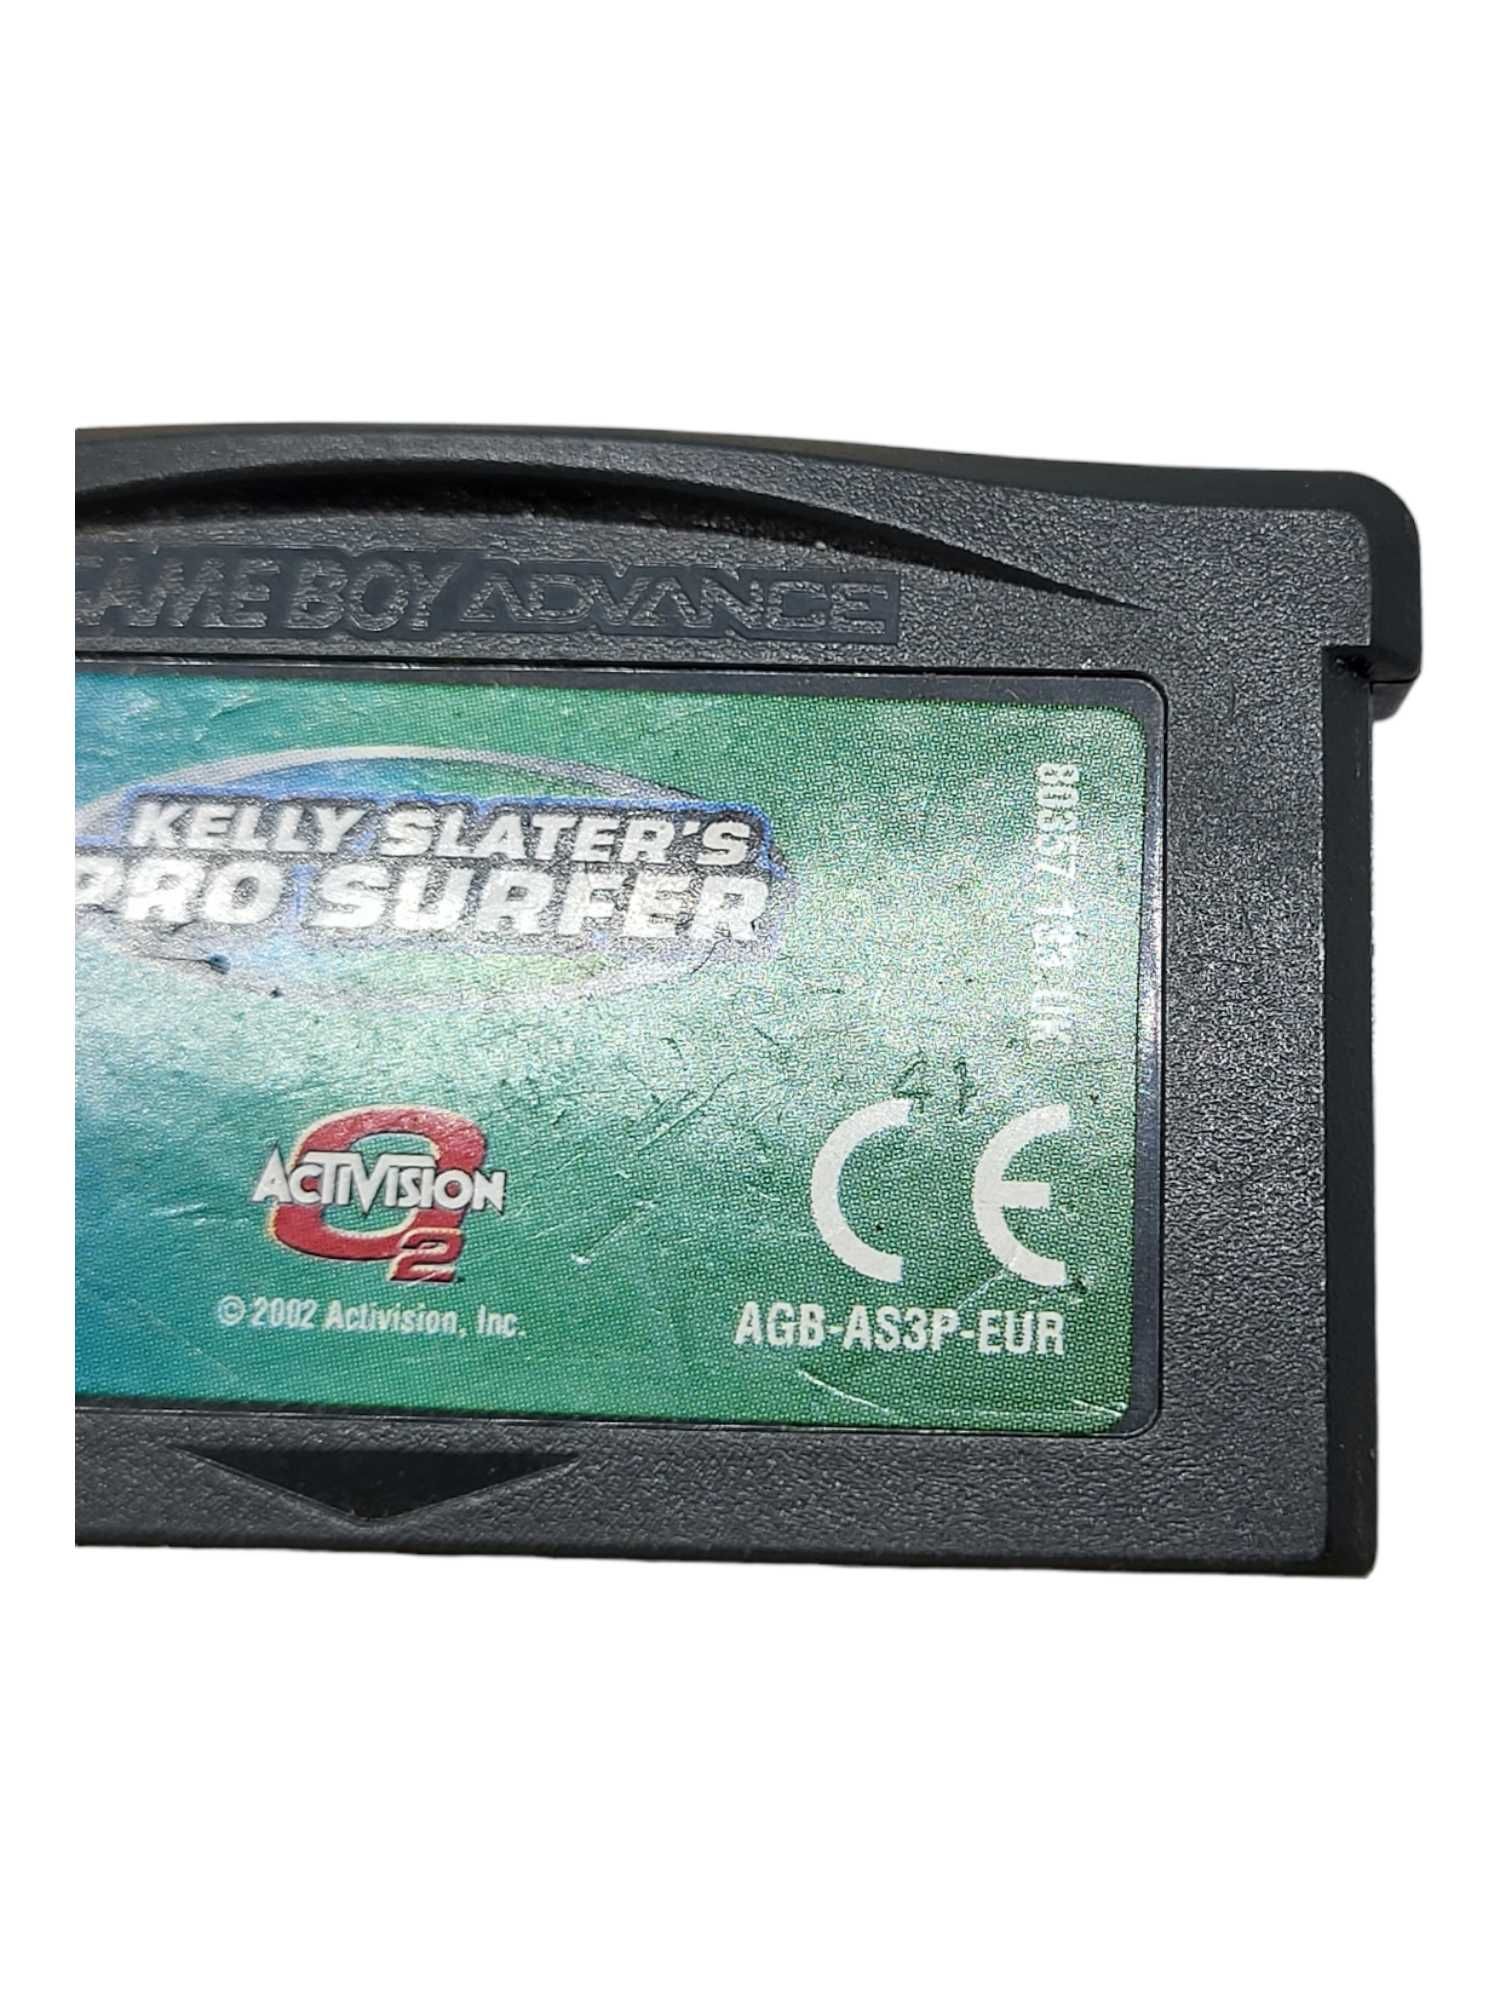 Kelly Slater's Pro Surfer Game Boy Gameboy Advance GBA